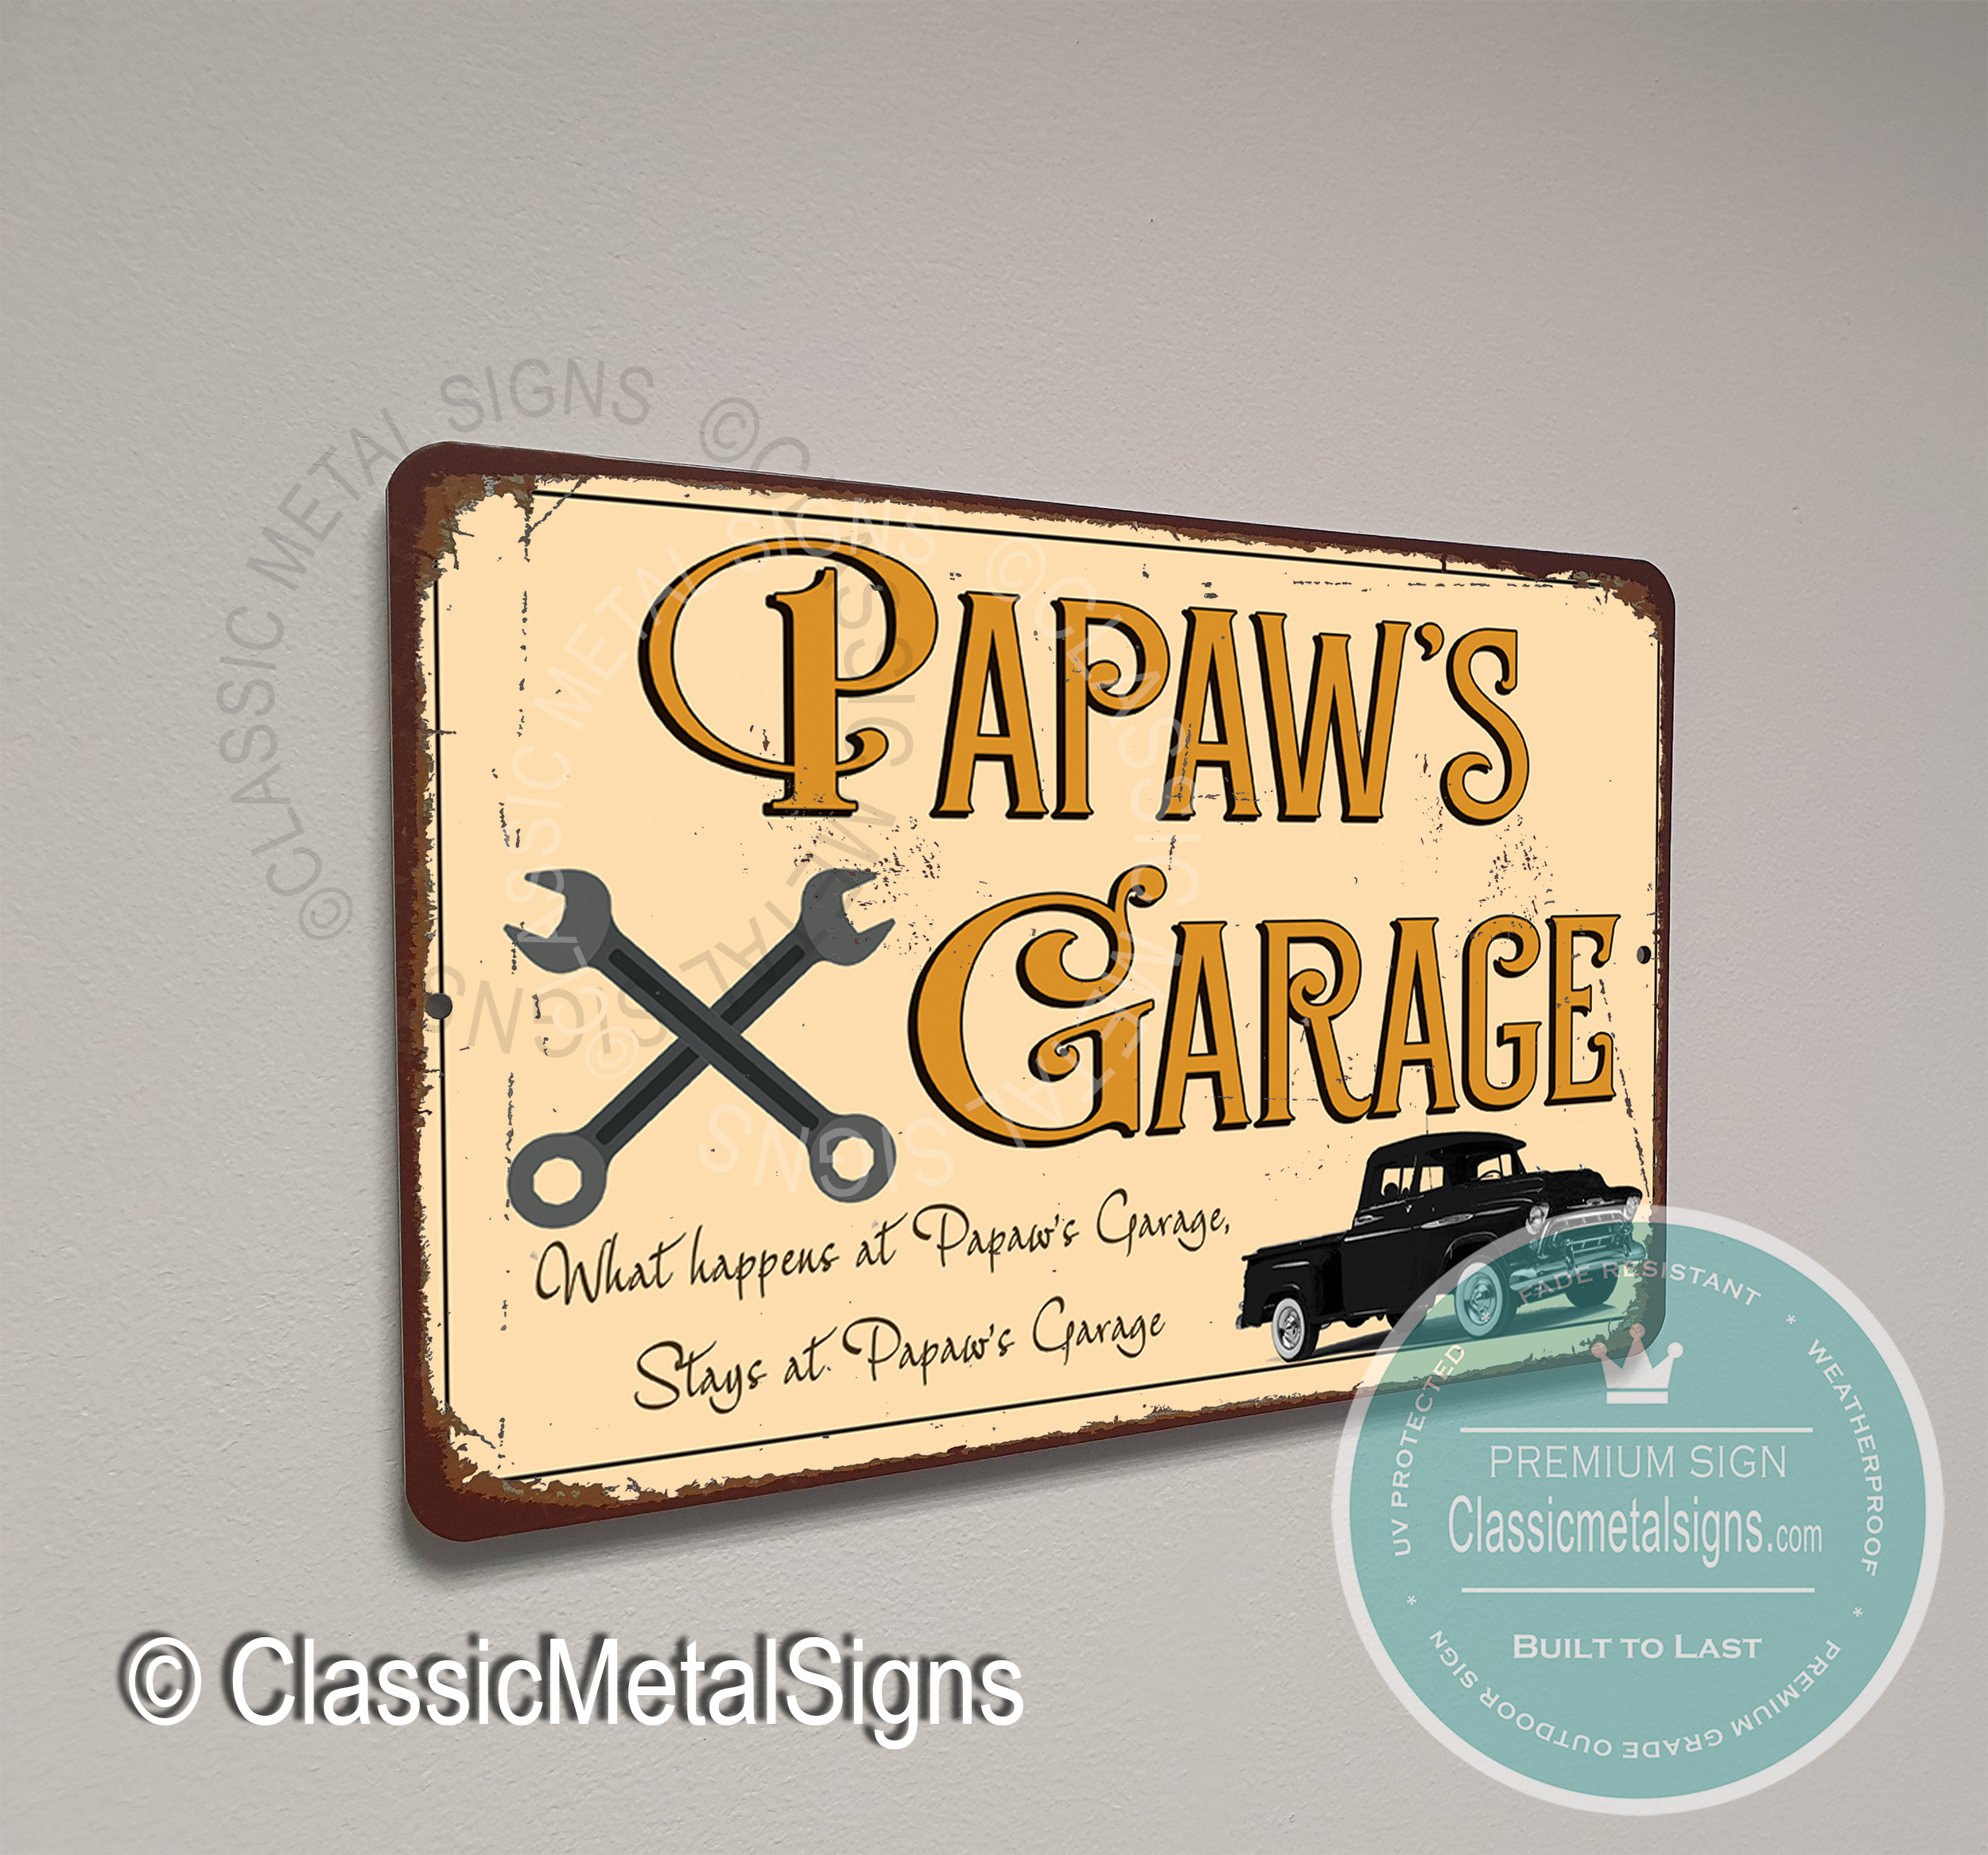 Papaw's Garage Signs